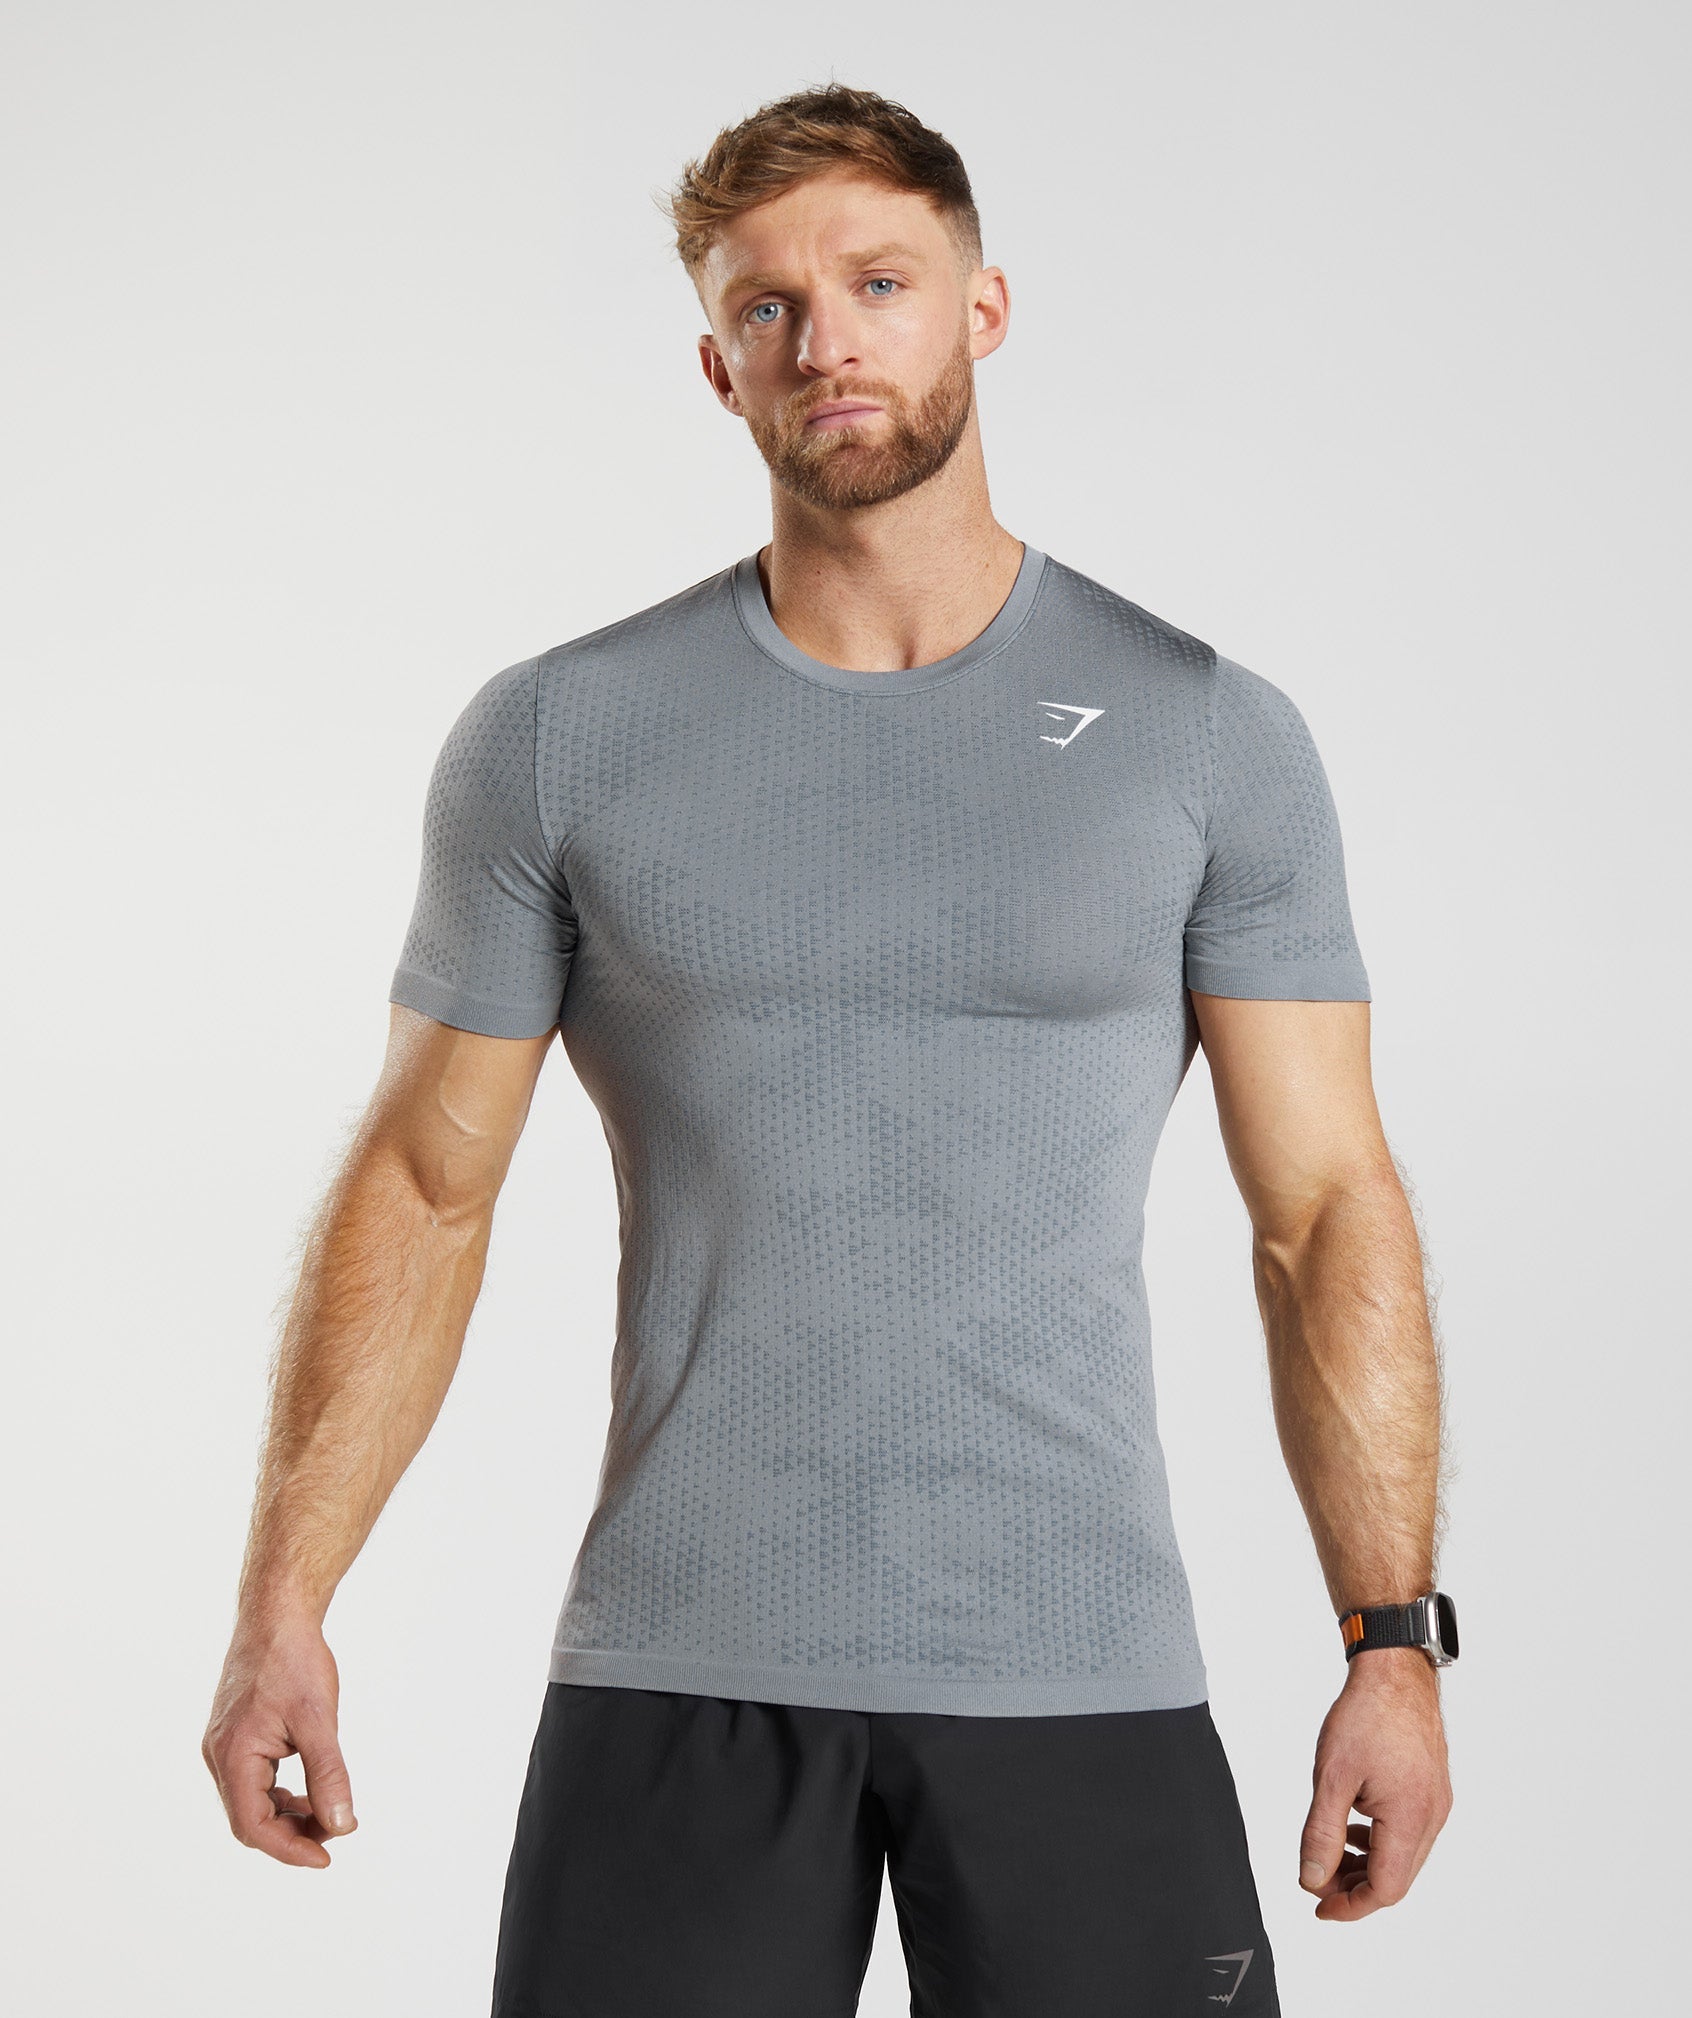 Gymshark Sport Seamless T-Shirt - Drift Grey/Evening Blue